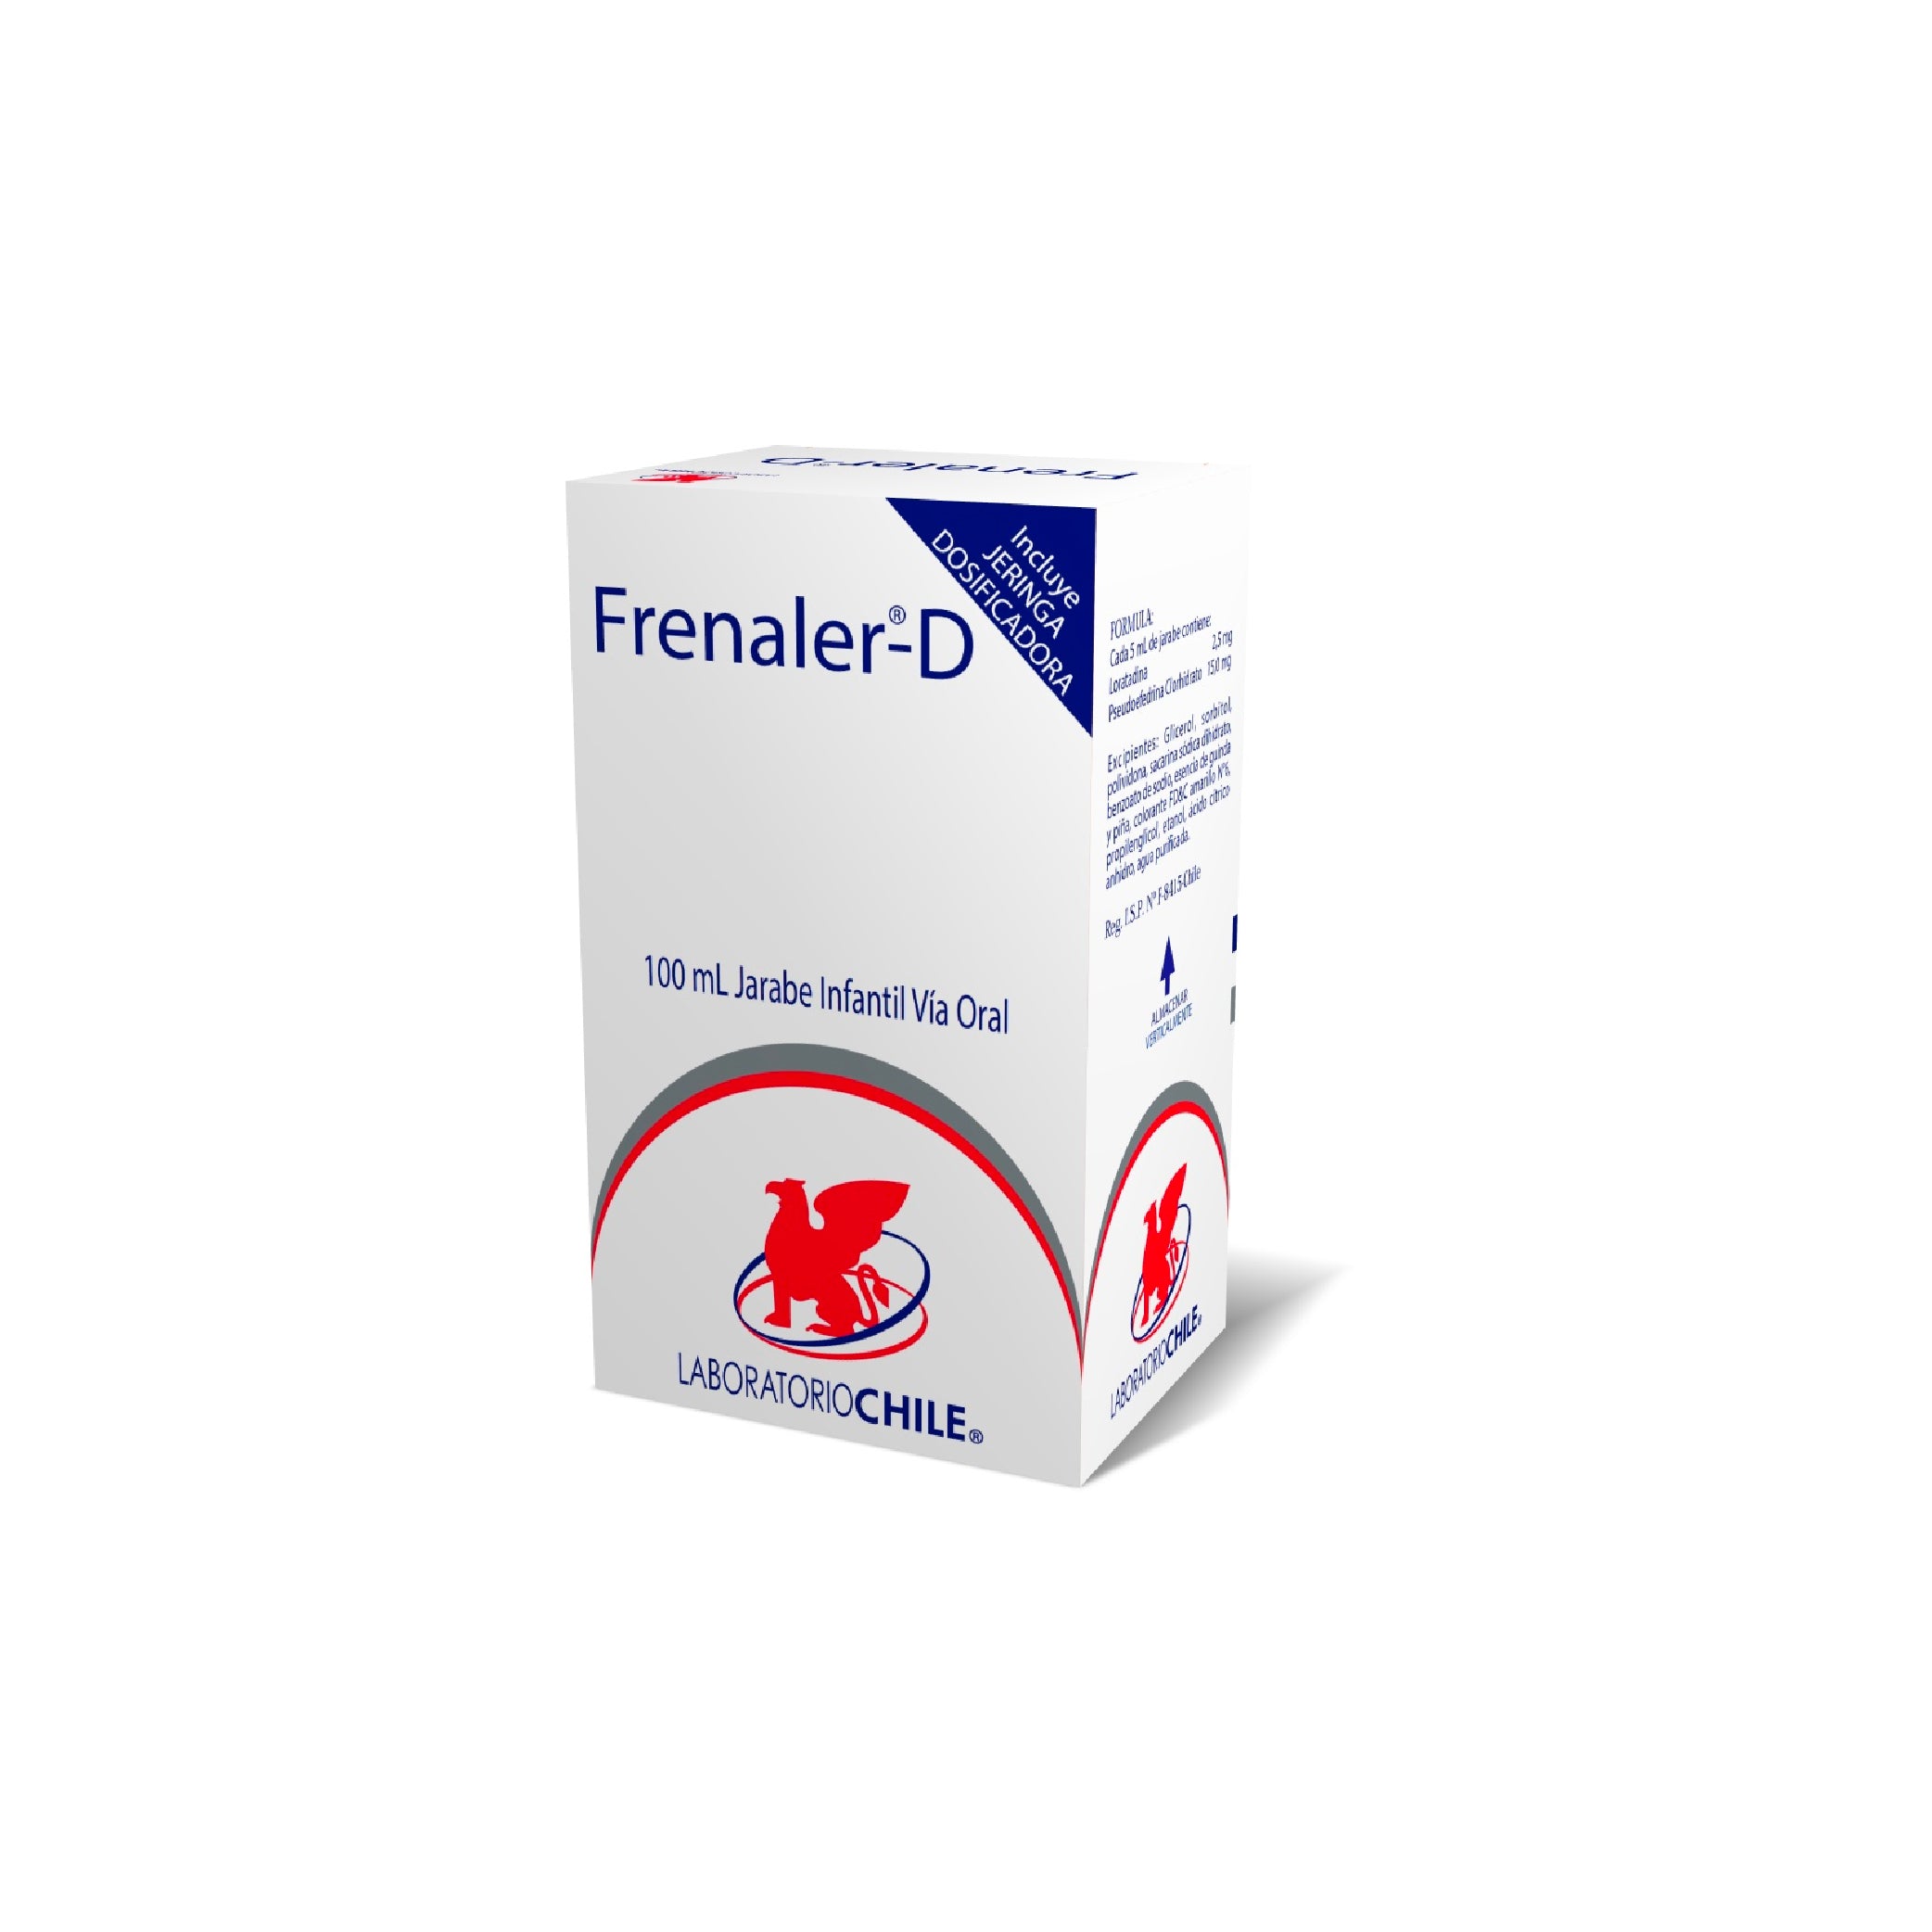 FRENALER-D Inf. Jbe. x 100ml c/Facidose